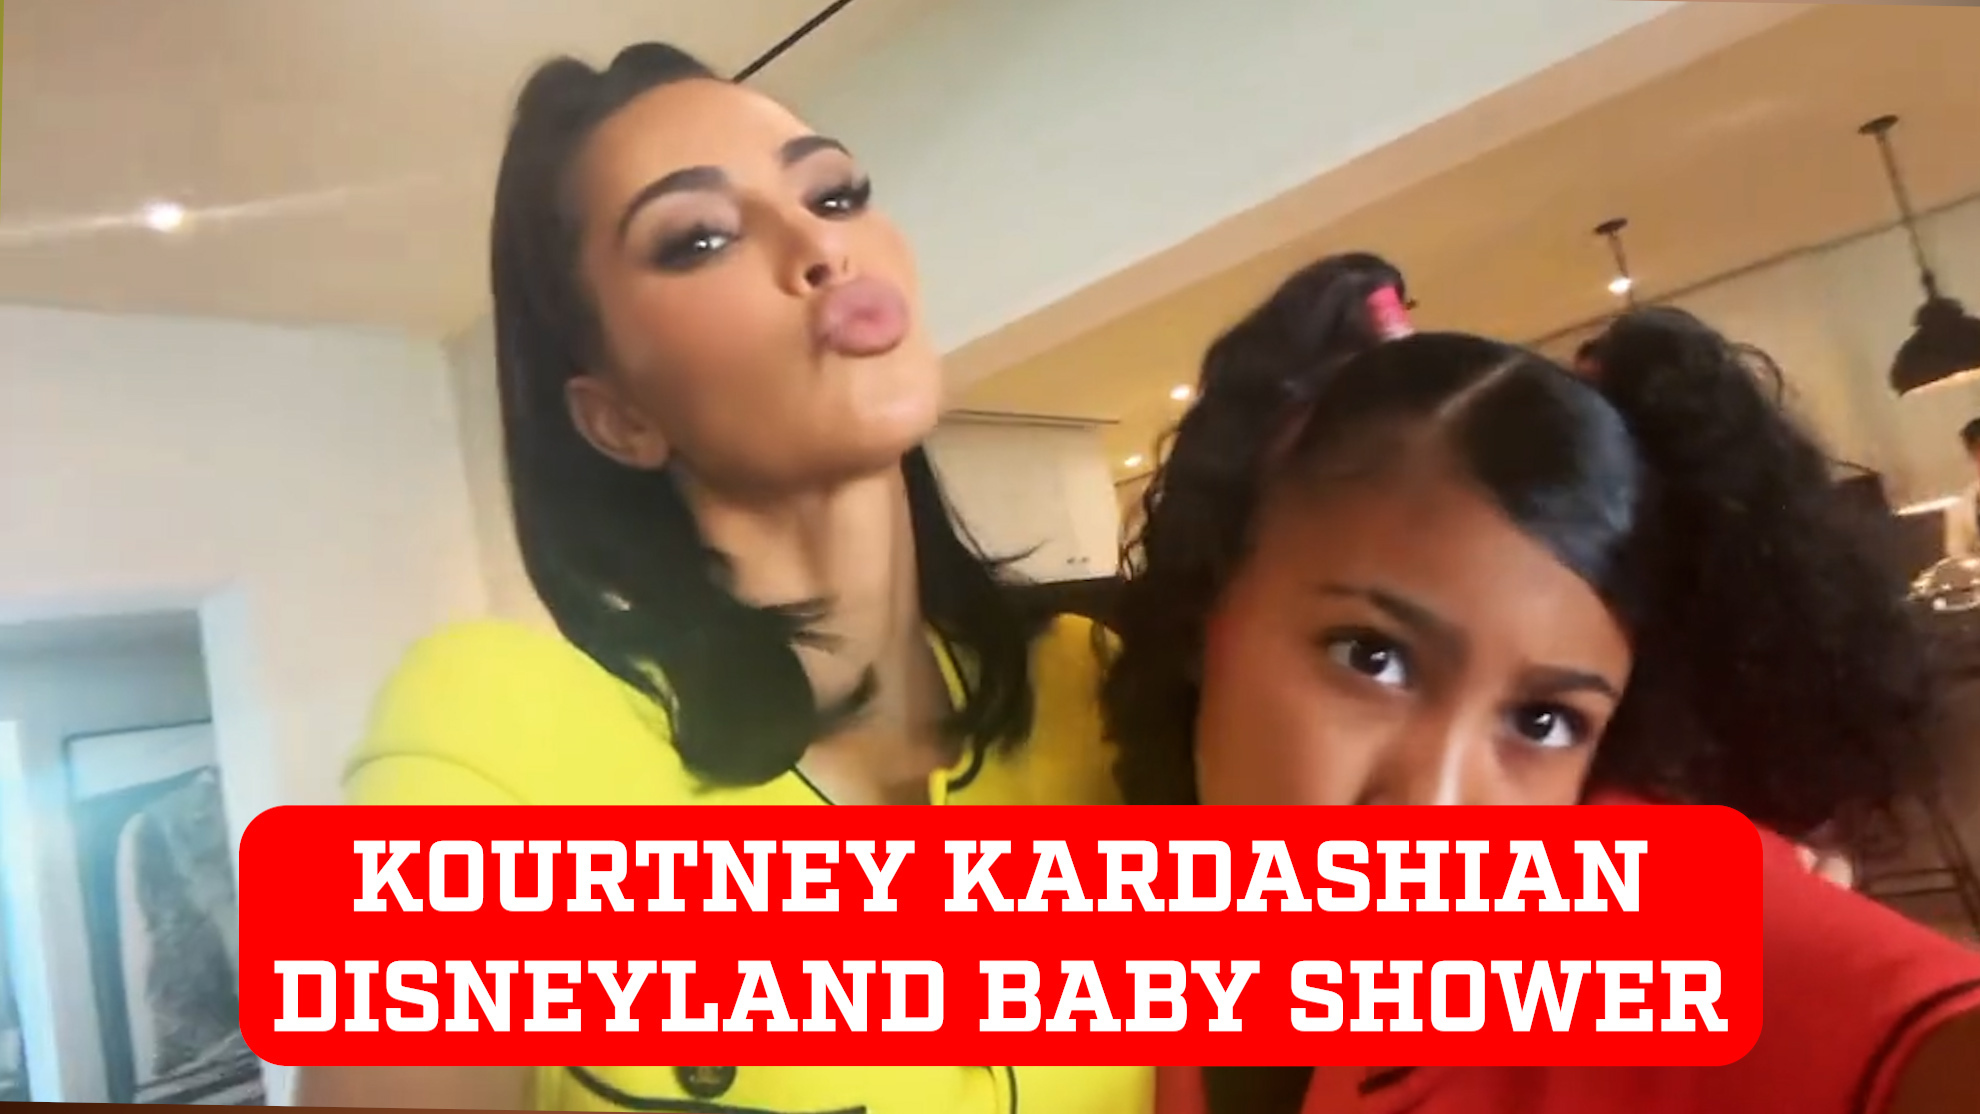 Kourtney Kardashian's Disneyland-themed baby shower was shown on Instagram by Kim